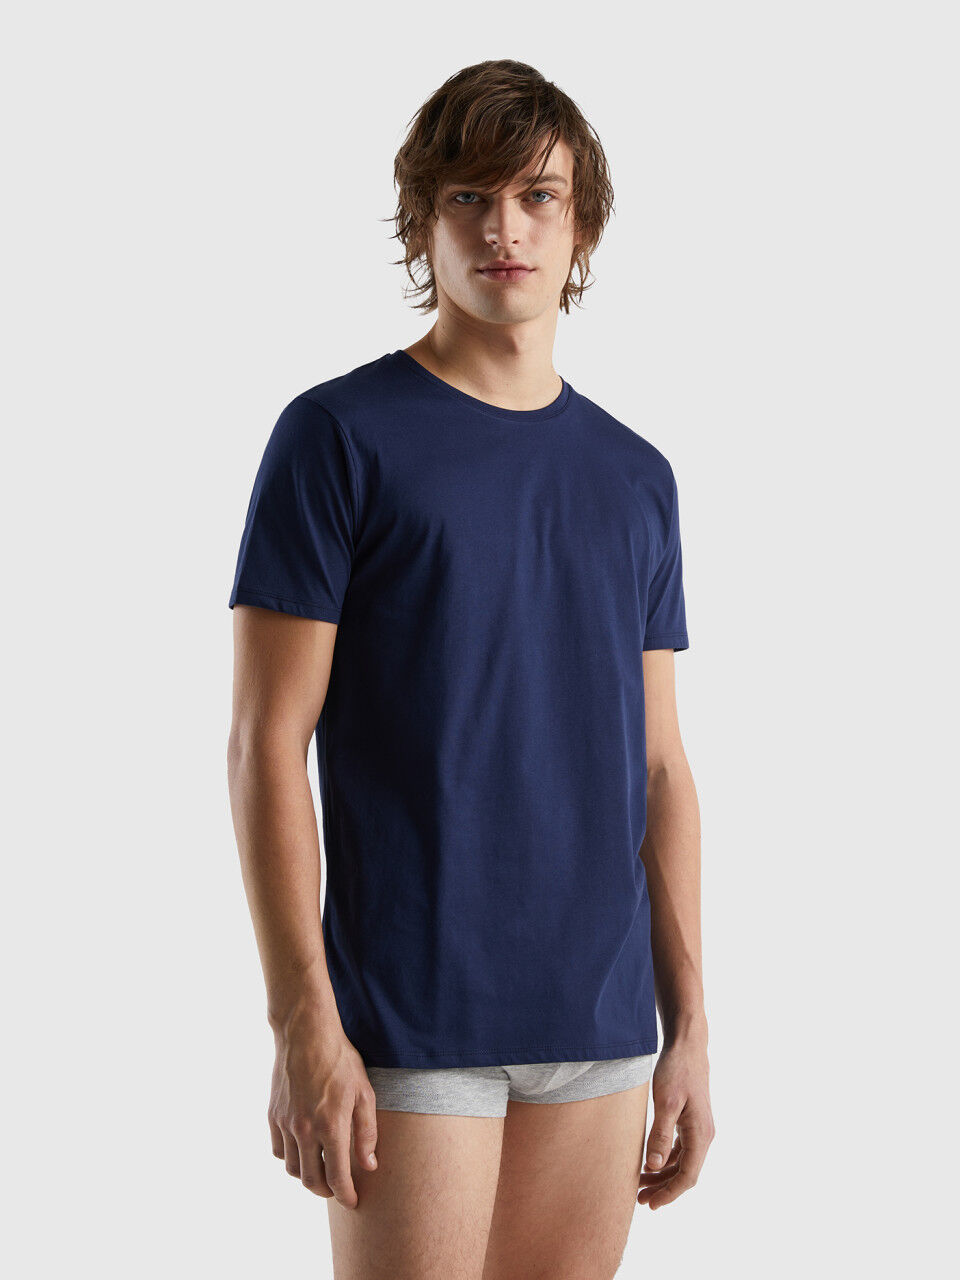 Long fiber cotton t-shirt